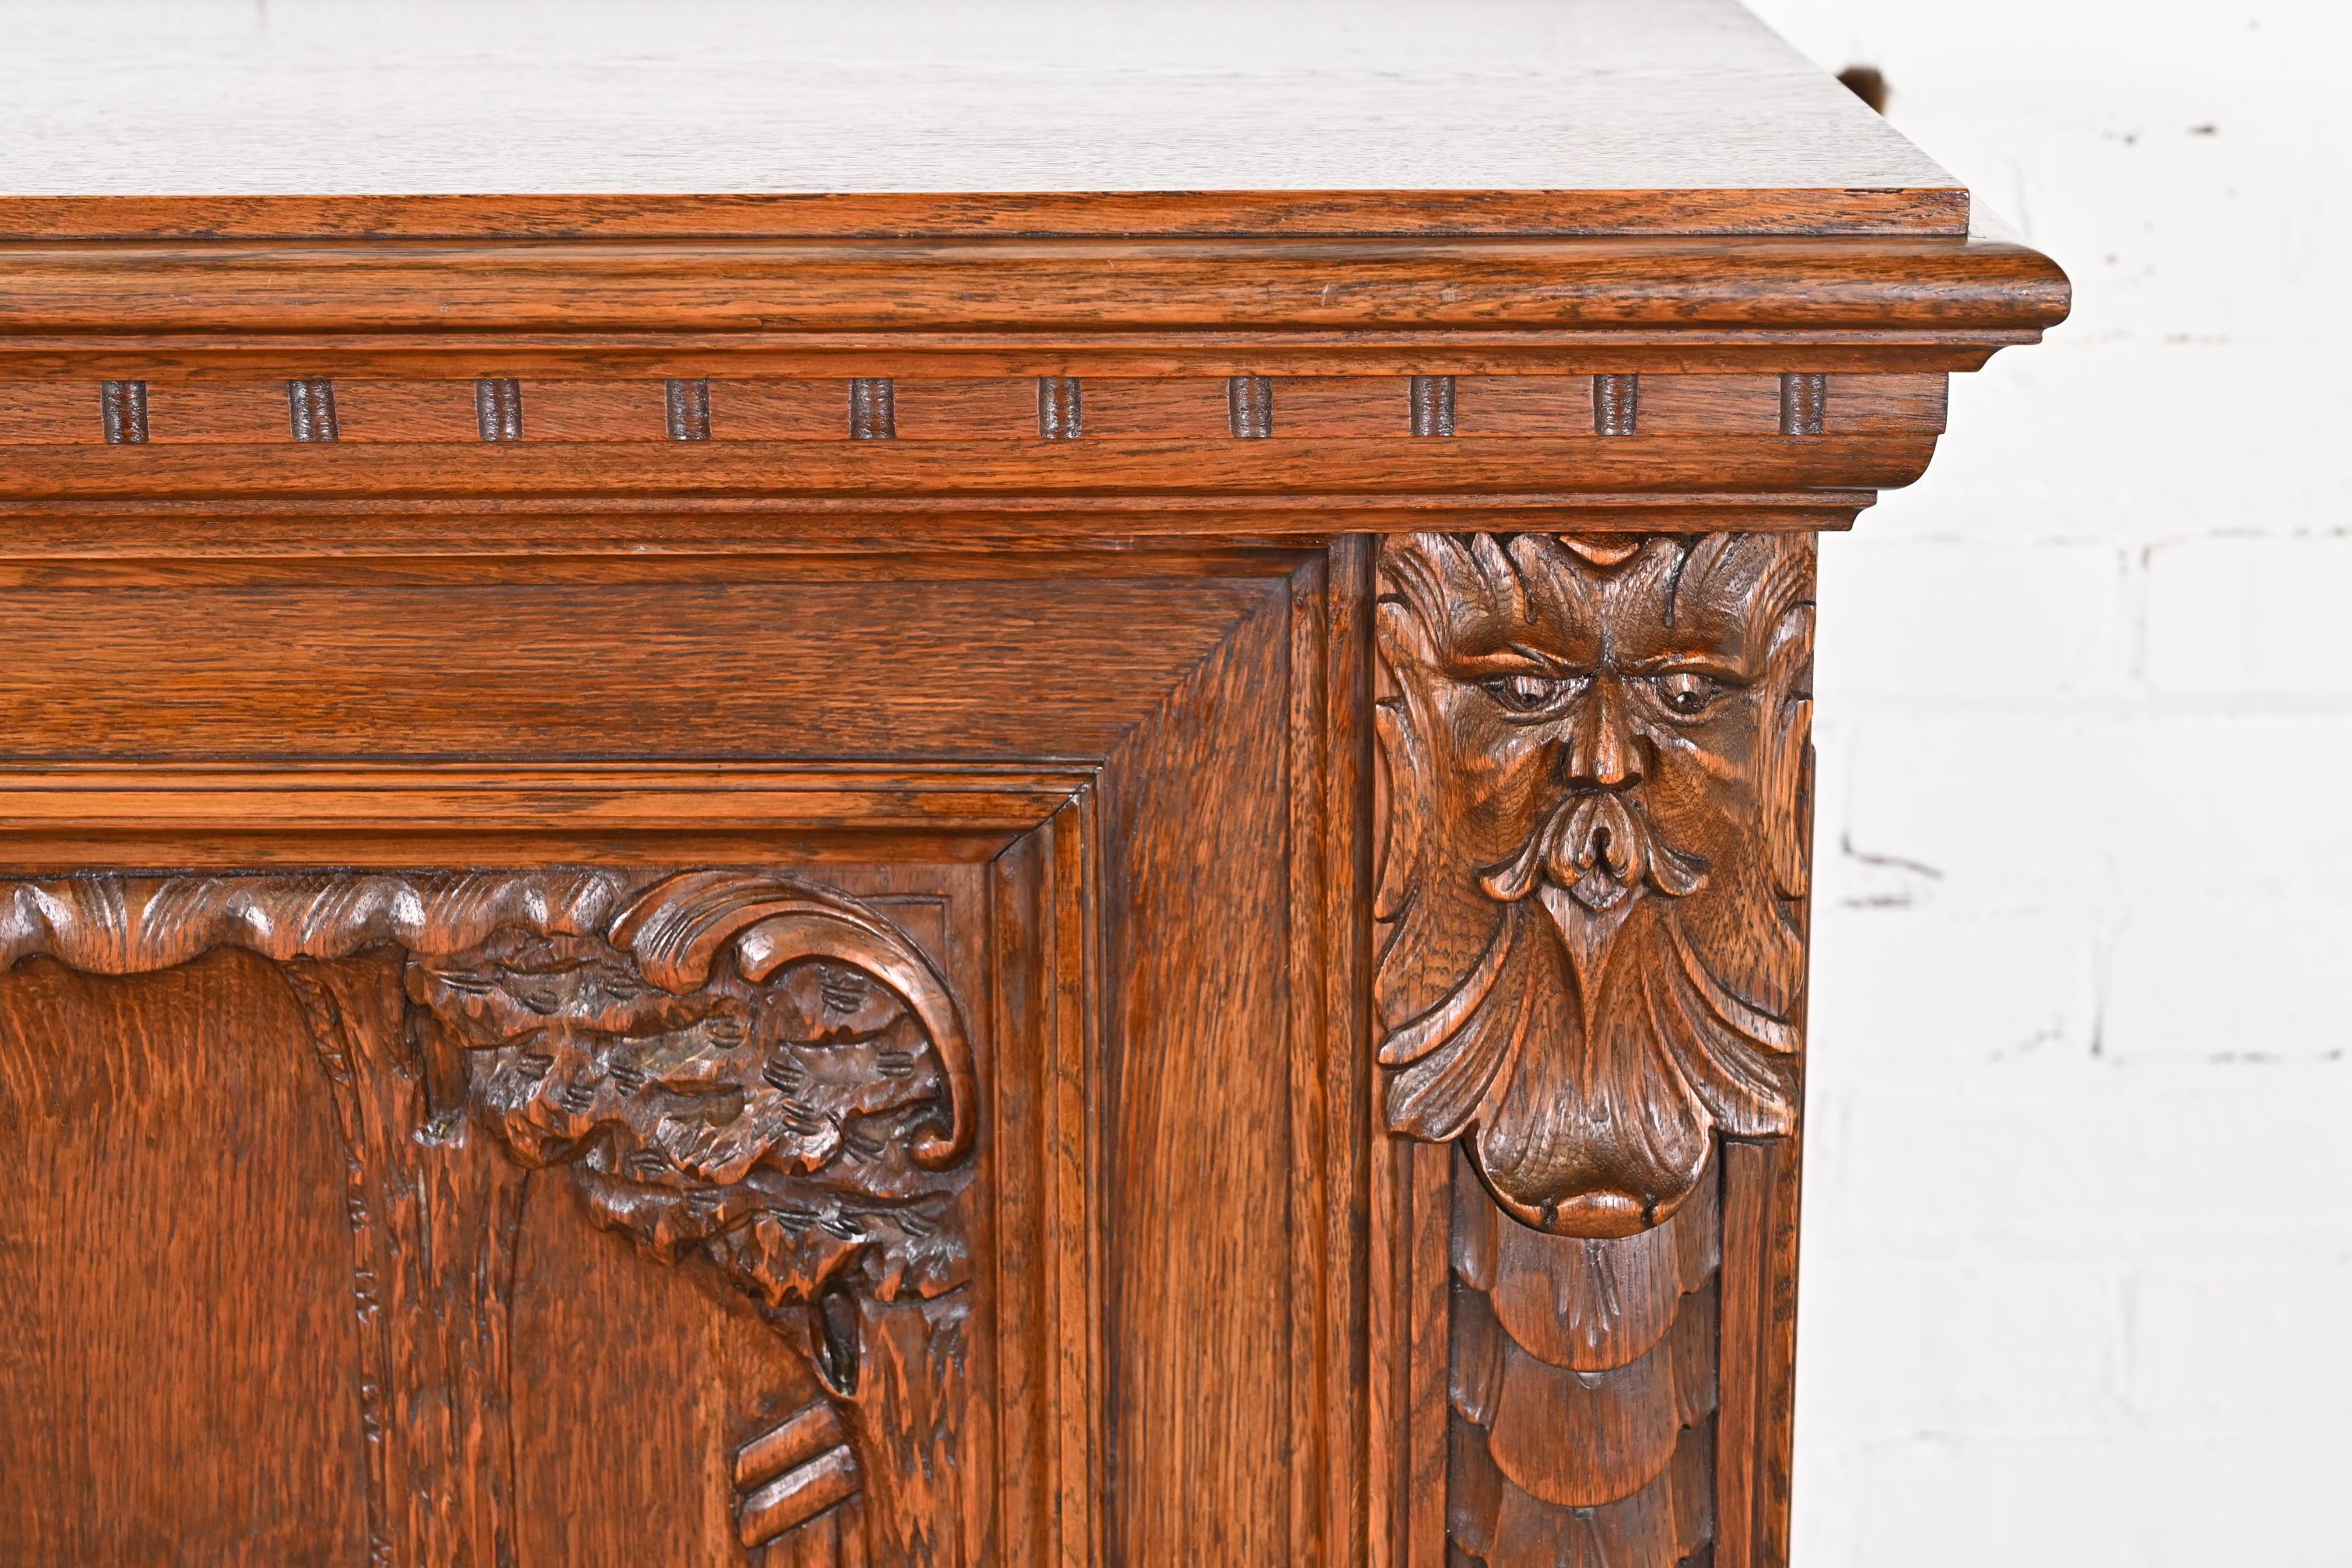 Antique Danish Renaissance Revival Ornate Carved Oak Sideboard or Bar Cabinet 9